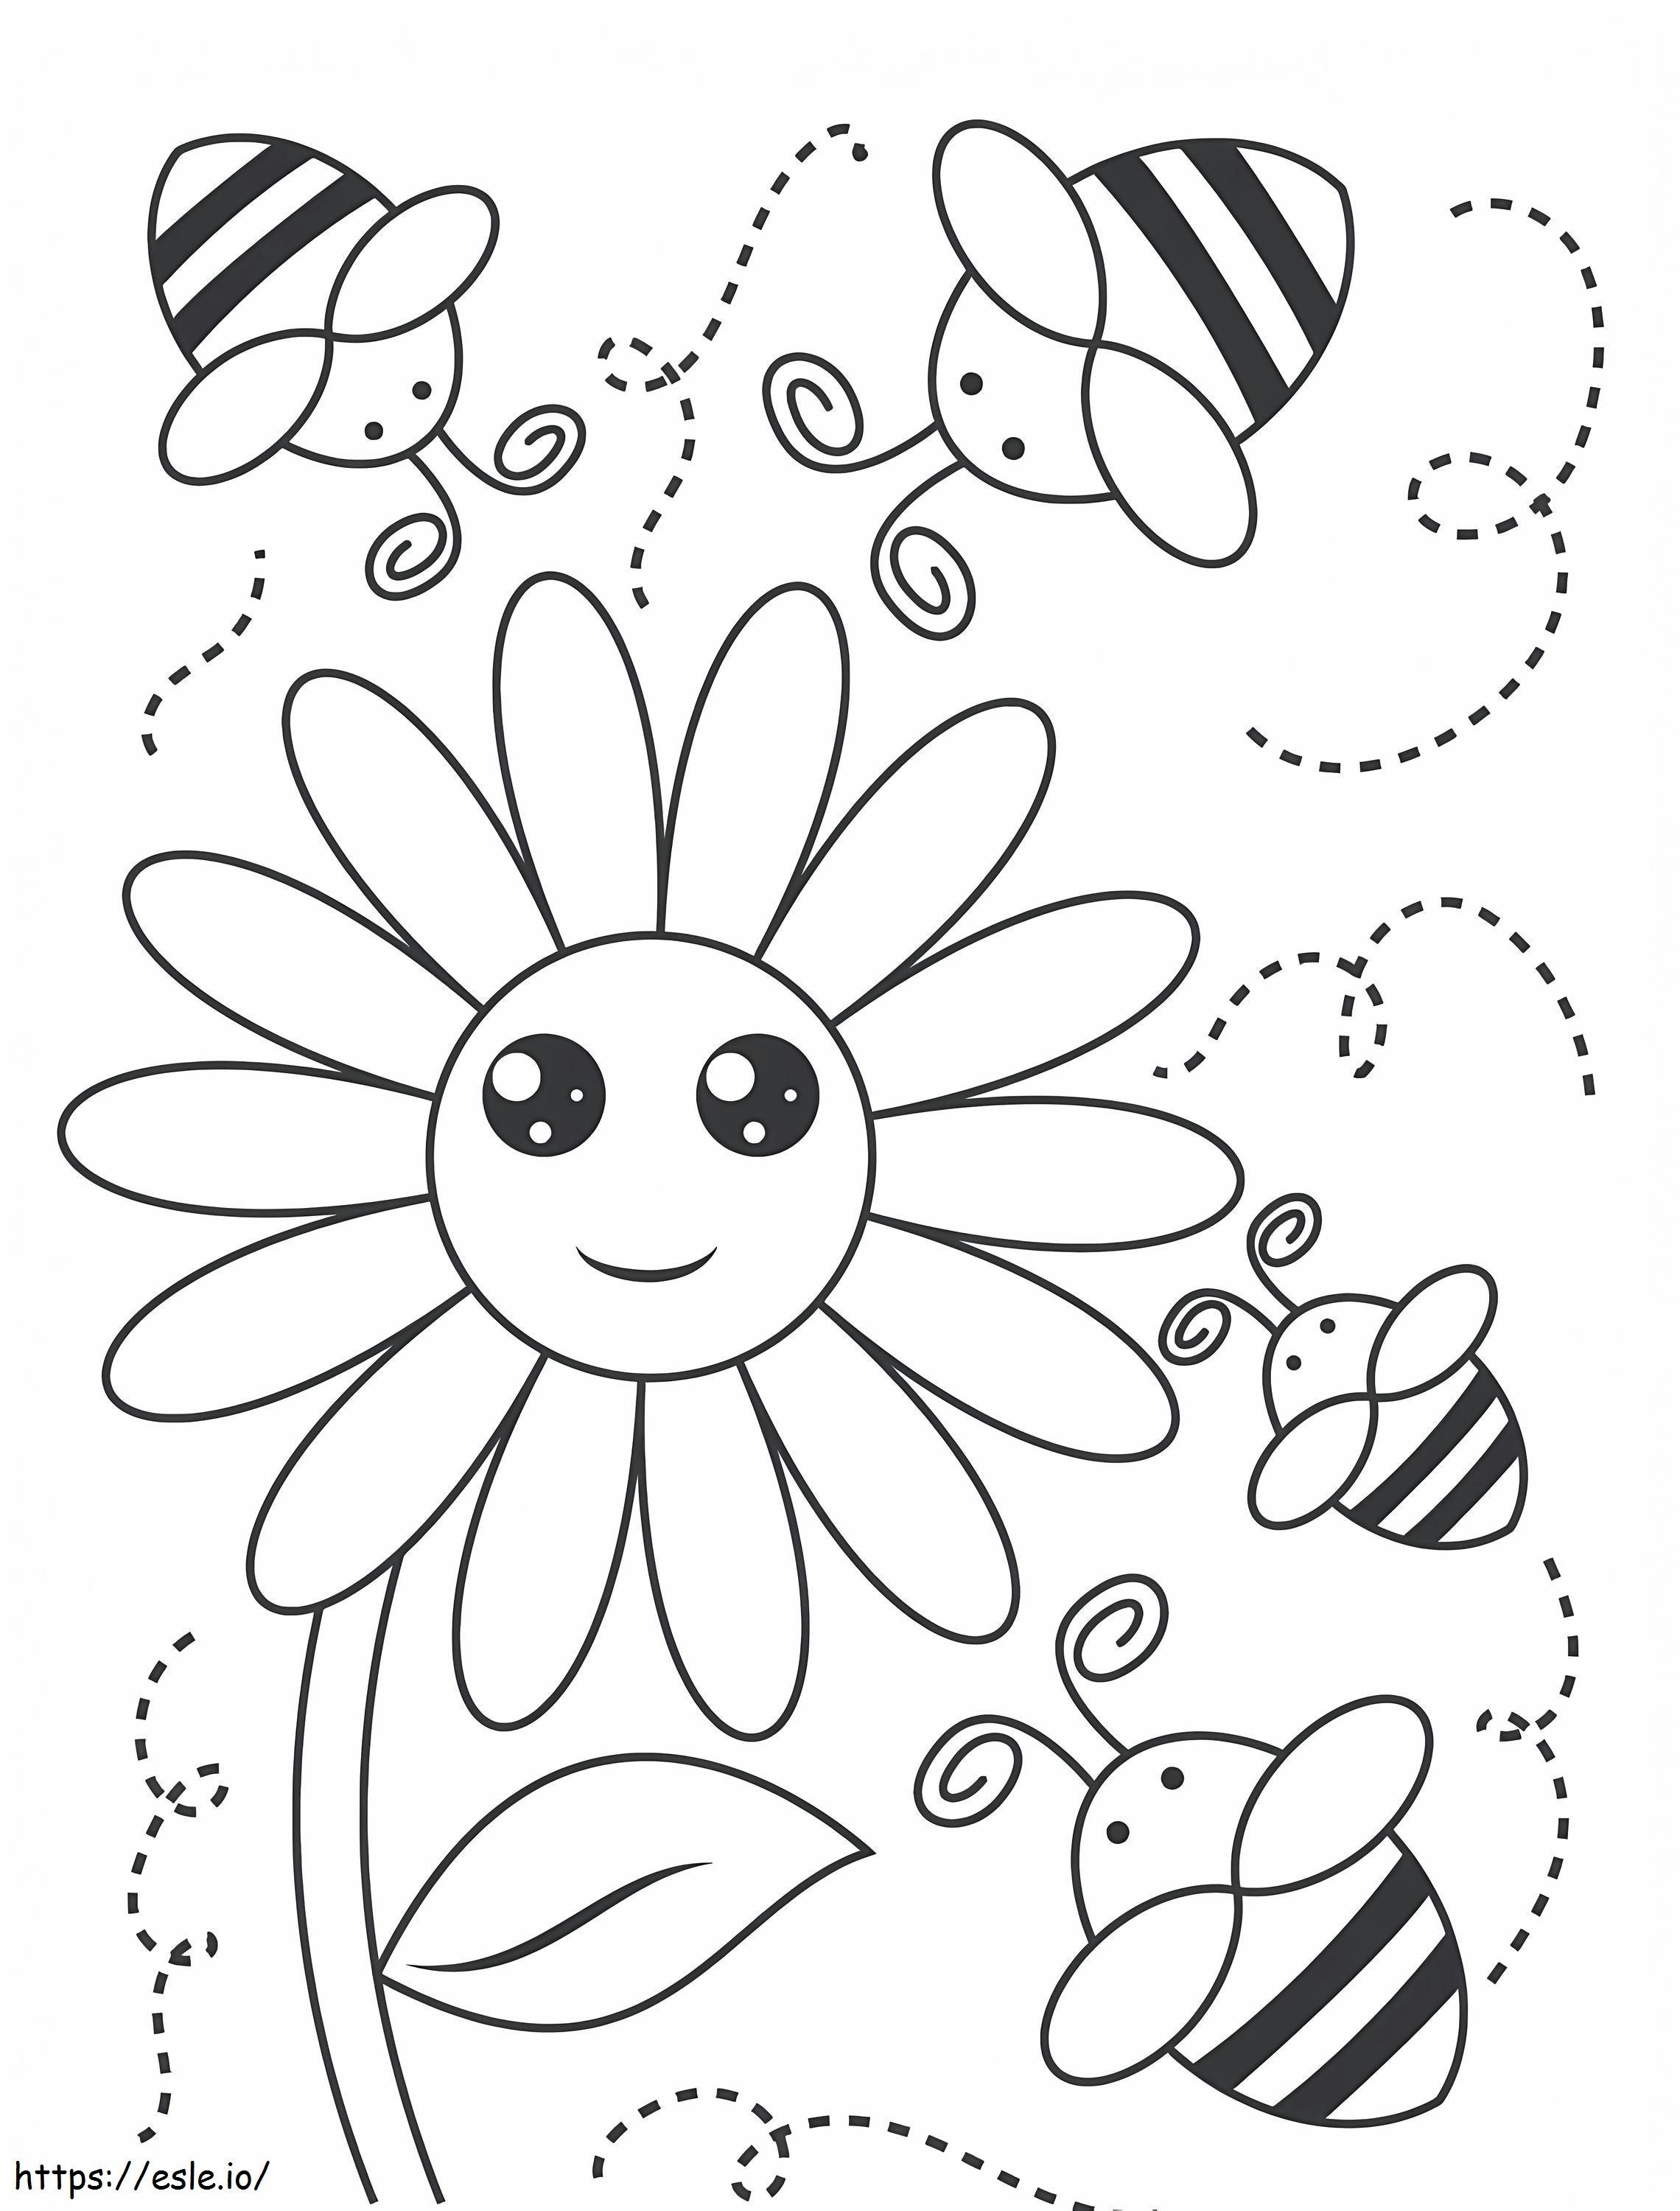 Cuatro abejas sonrientes con flor para colorear